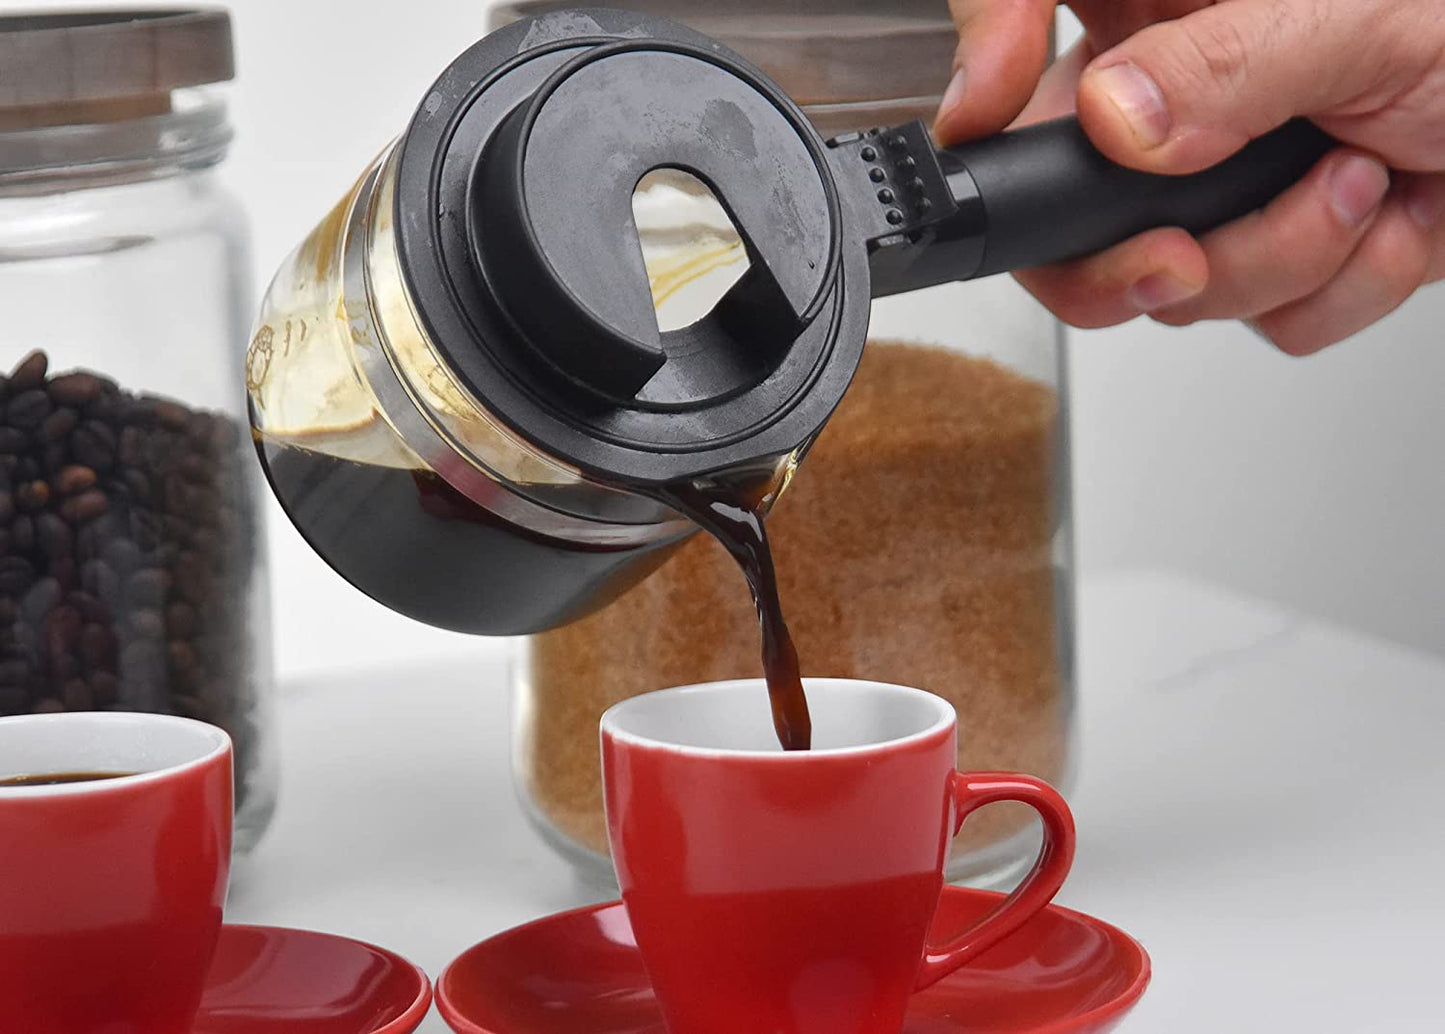 4-Cup Espresso/Cappuccino Maker Black